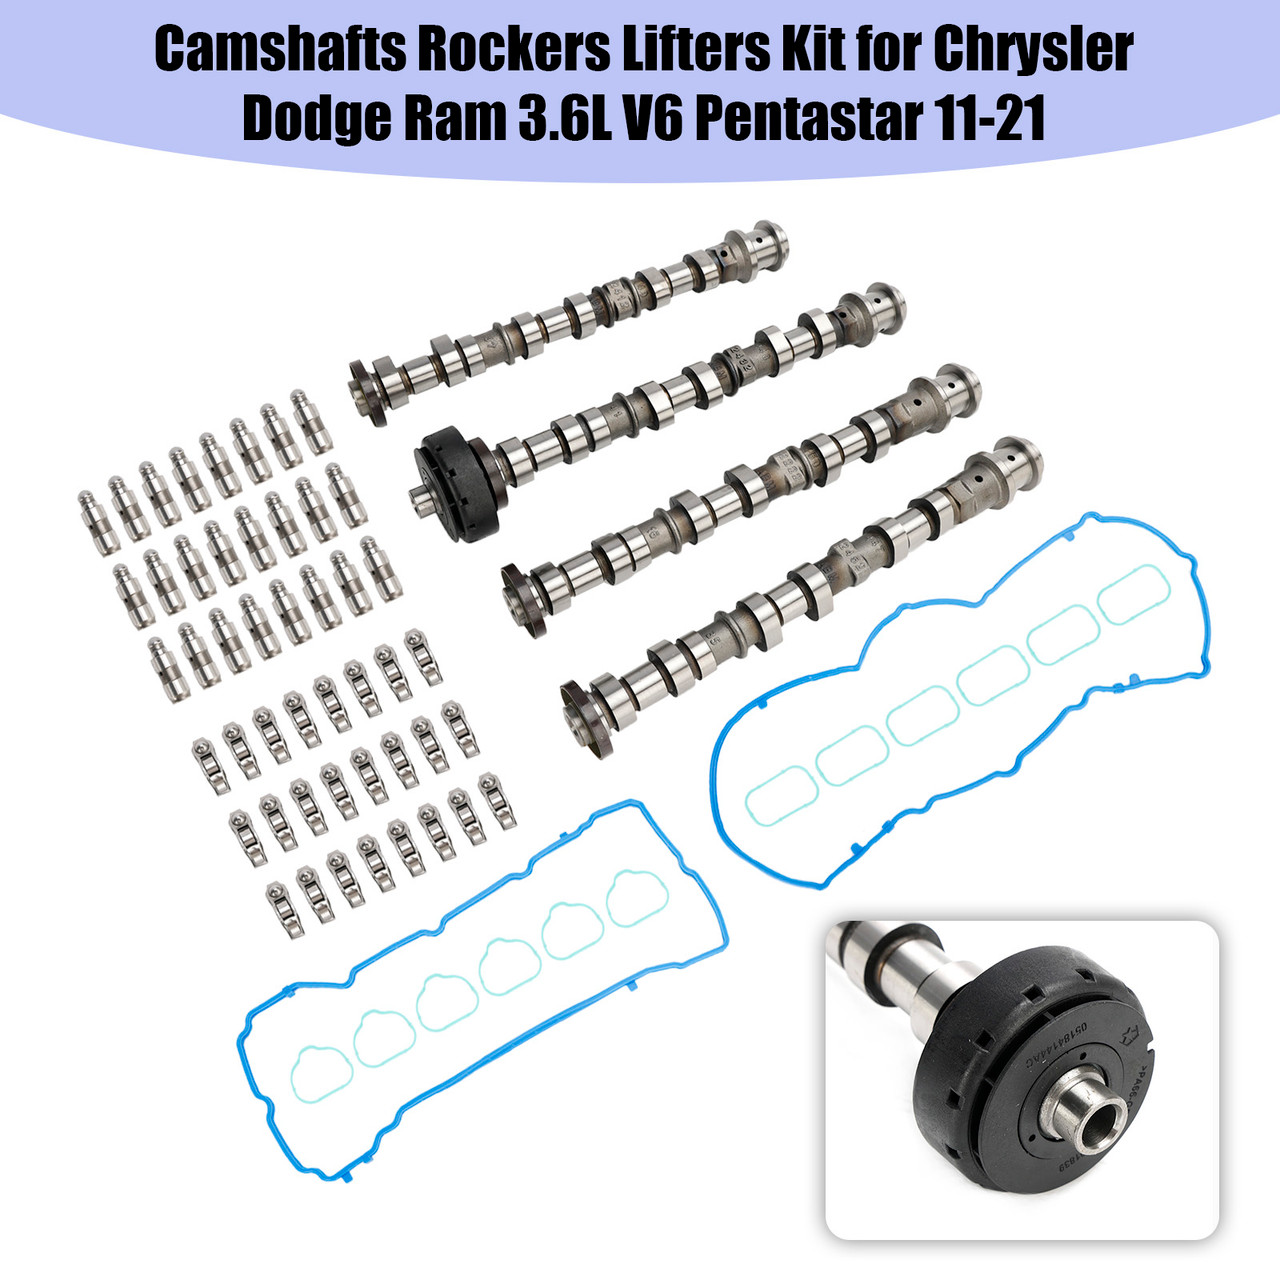 Camshafts Rockers Lifters Kit for Chrysler Dodge Ram 3.6L V6 Pentastar 11-21